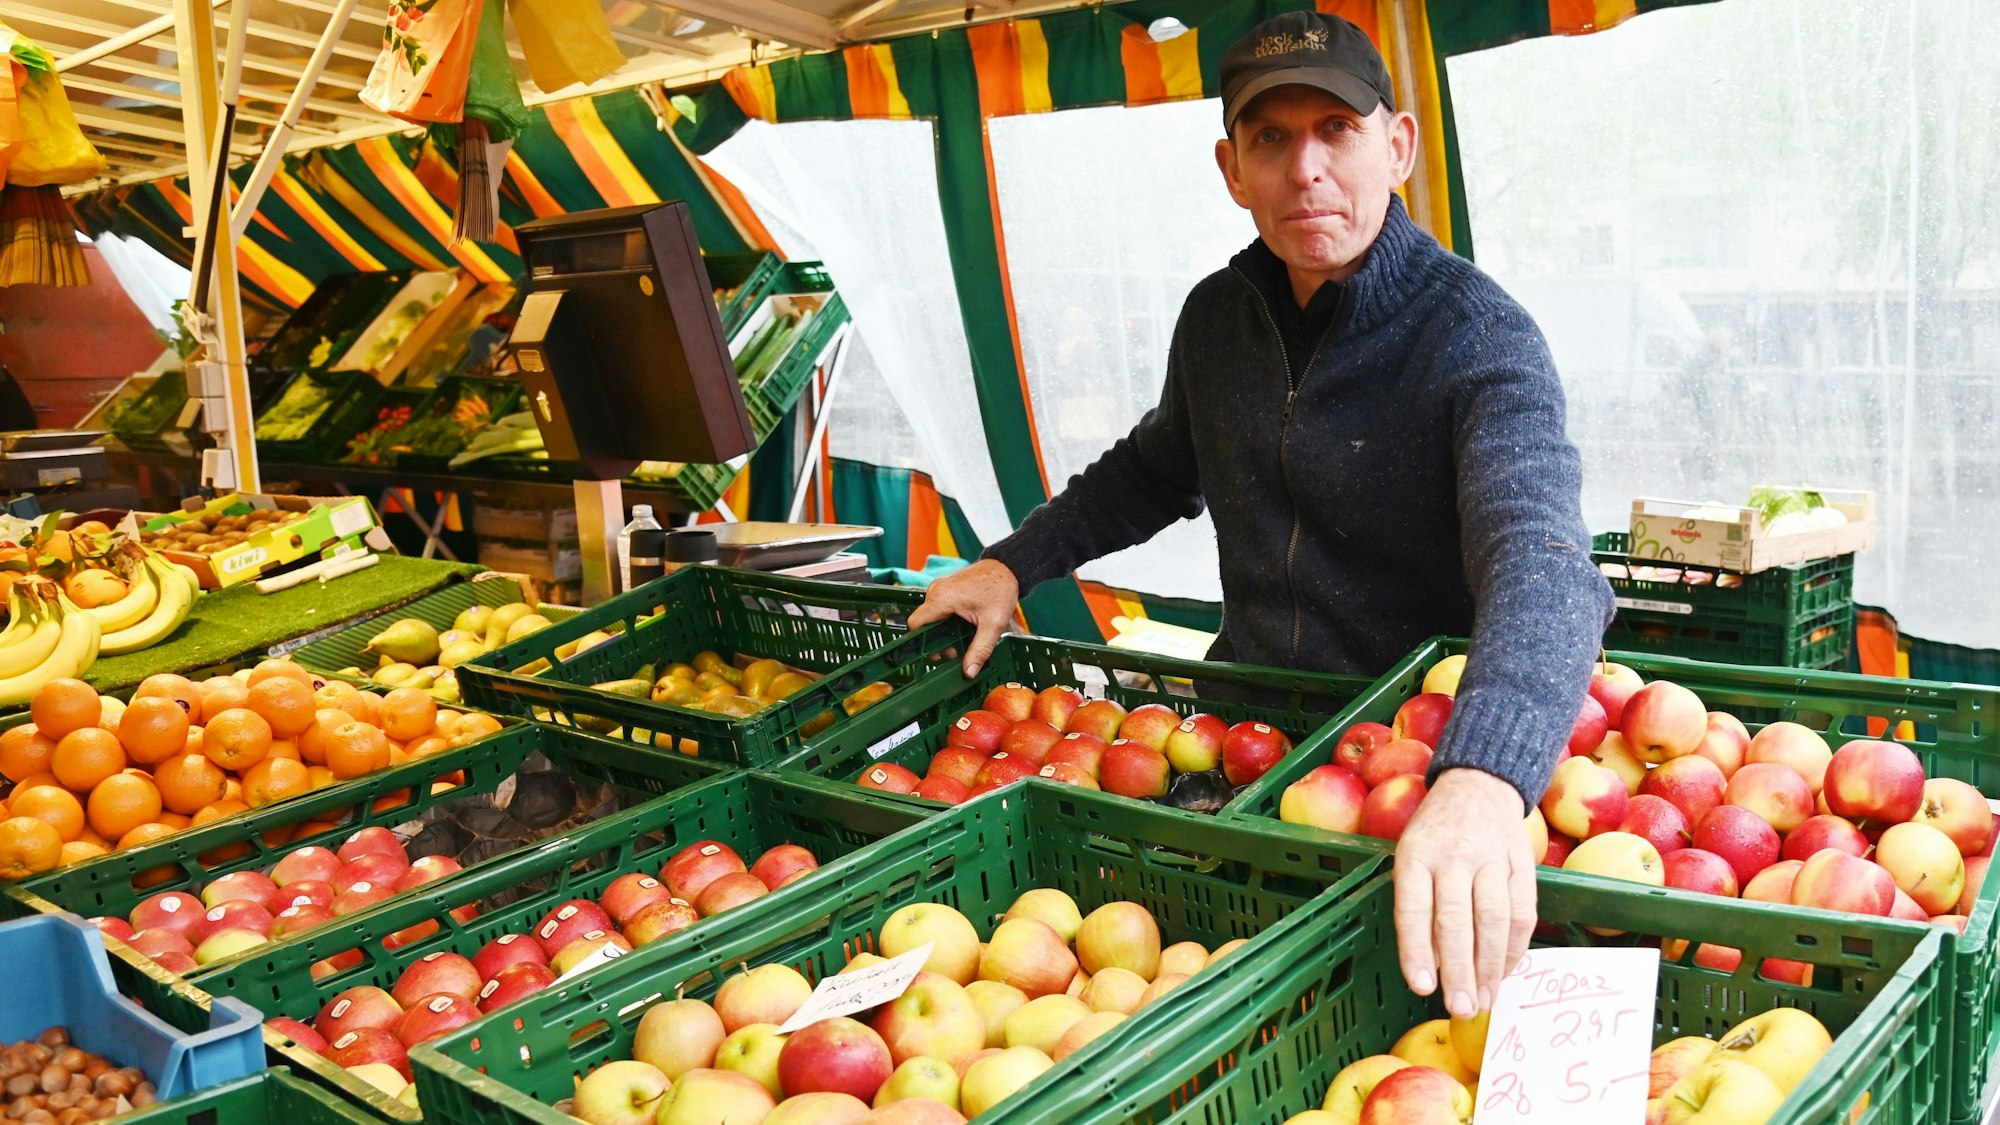 Lebensmittelhändler Theo Aßenmacher steht an seinem Stand und präsentiert Boxen voller Äpfel. Foto von Alexander Schwaiger

